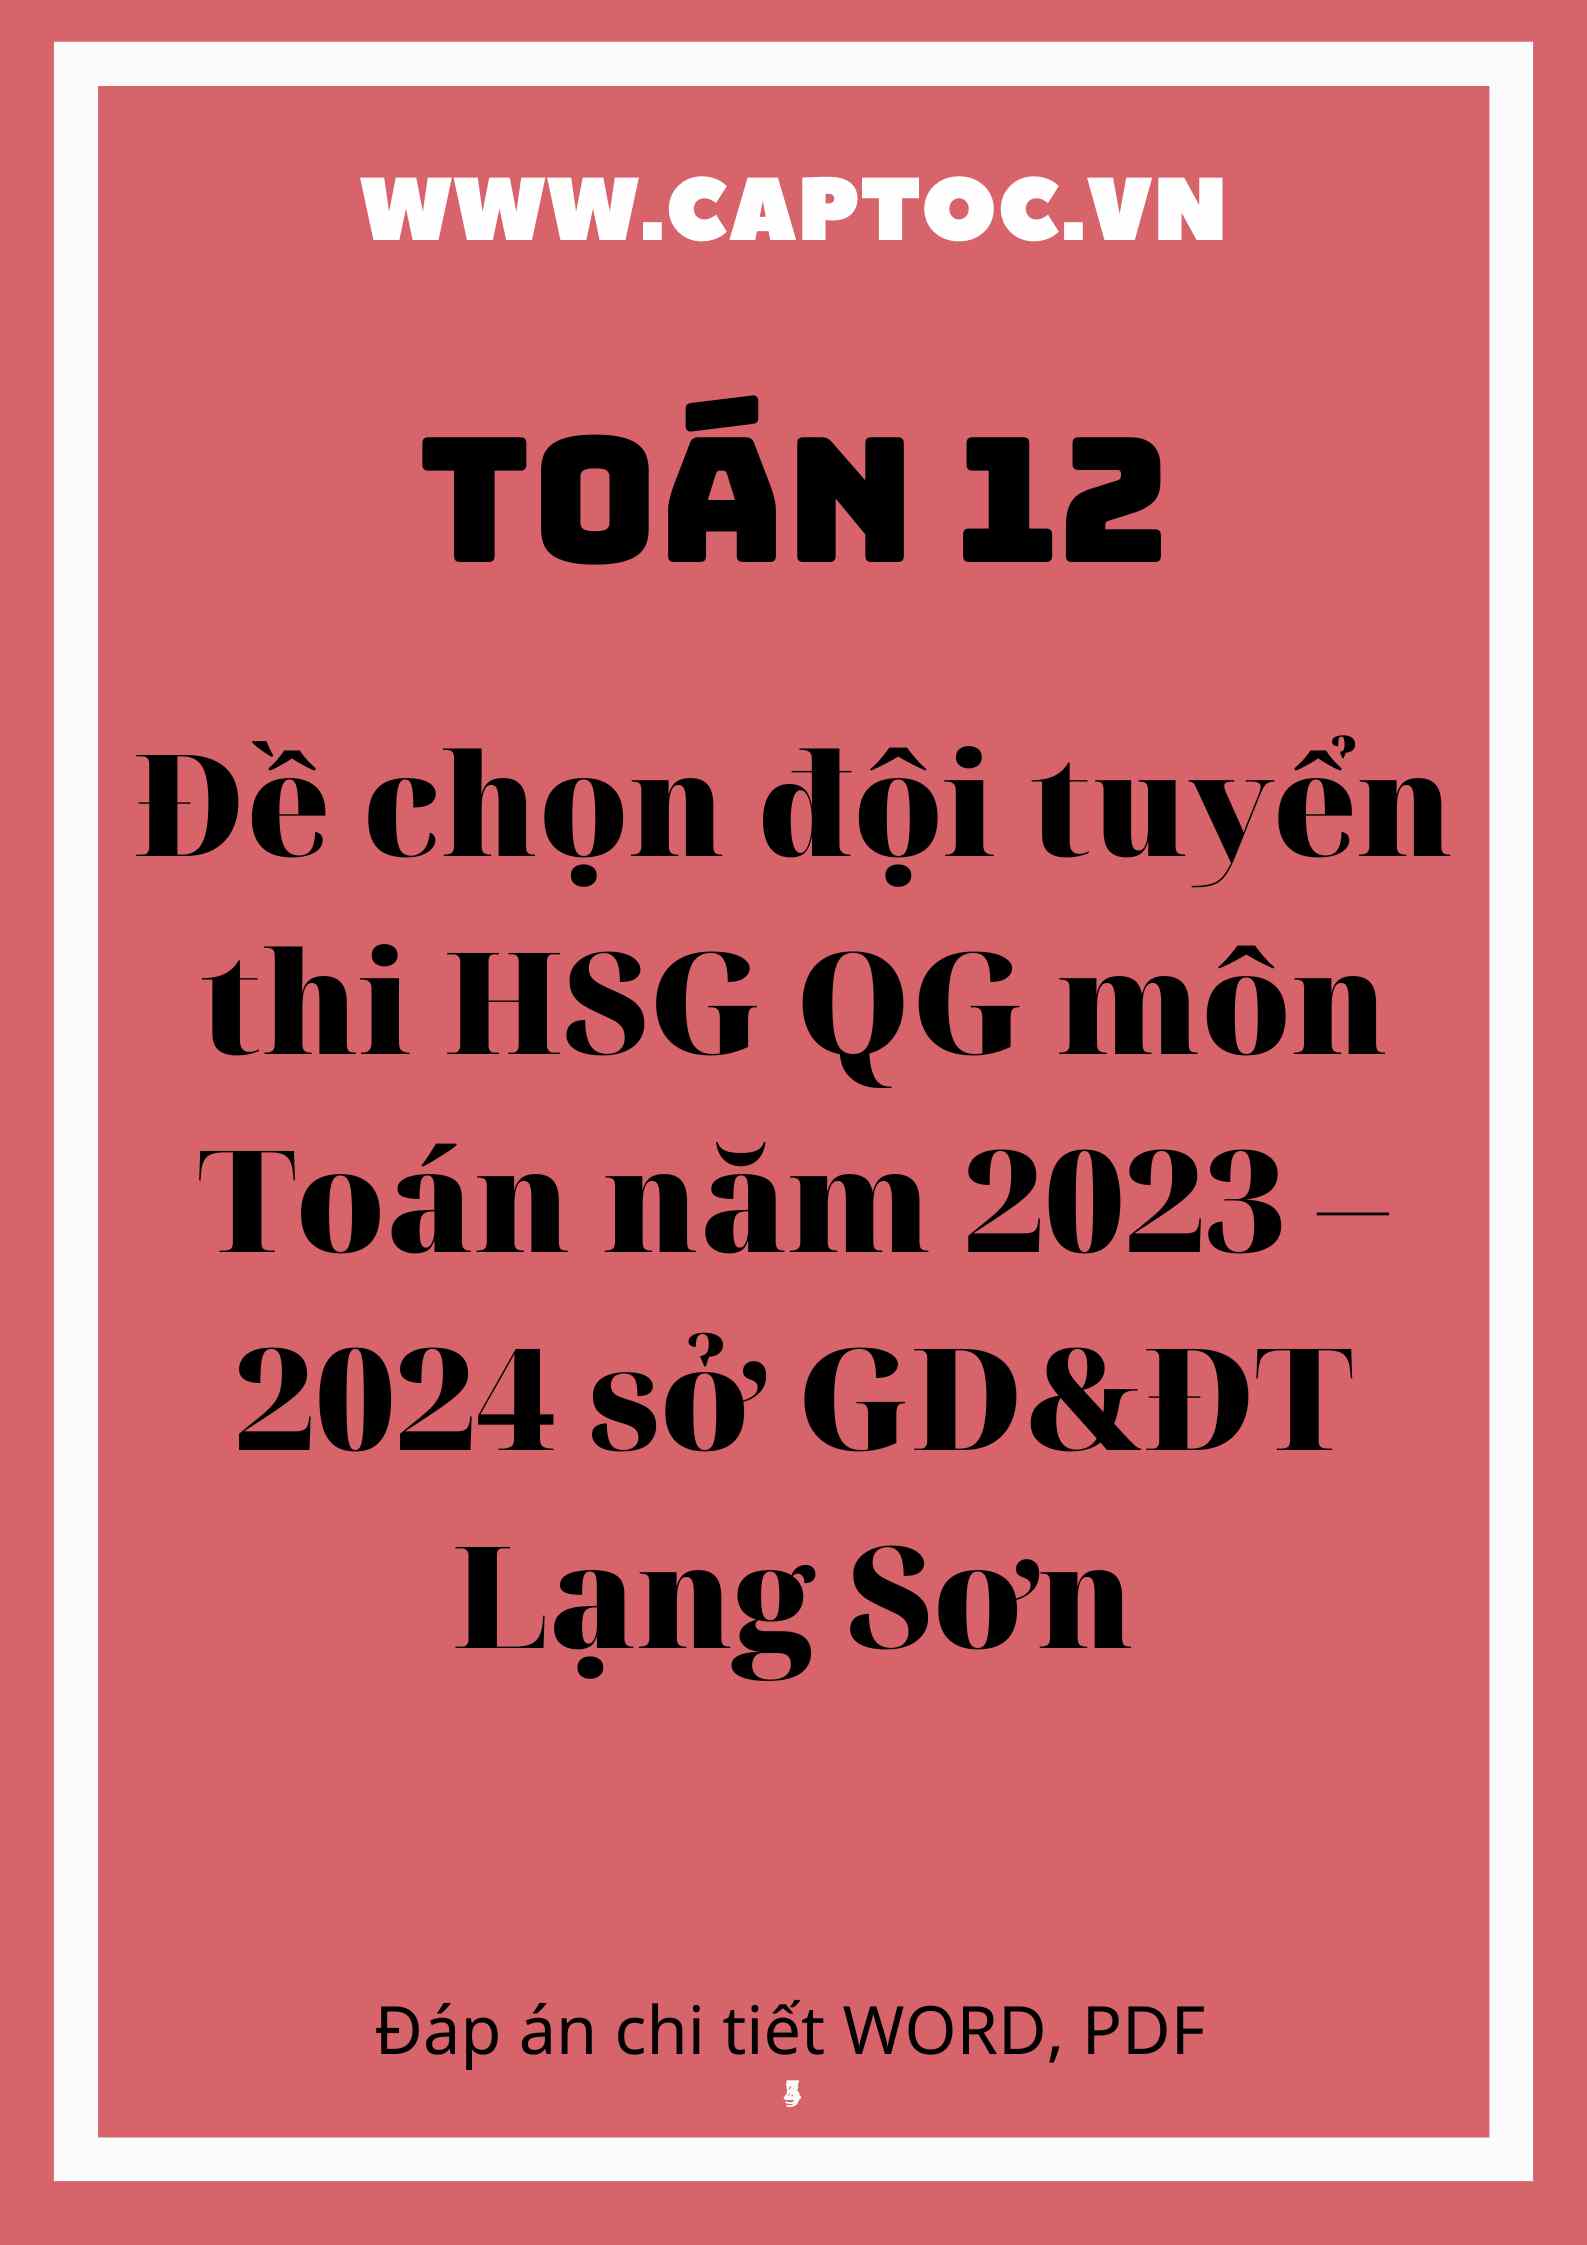 Đề chọn đội tuyển thi HSG QG môn Toán năm 2023 – 2024 sở GD&ĐT Lạng Sơn